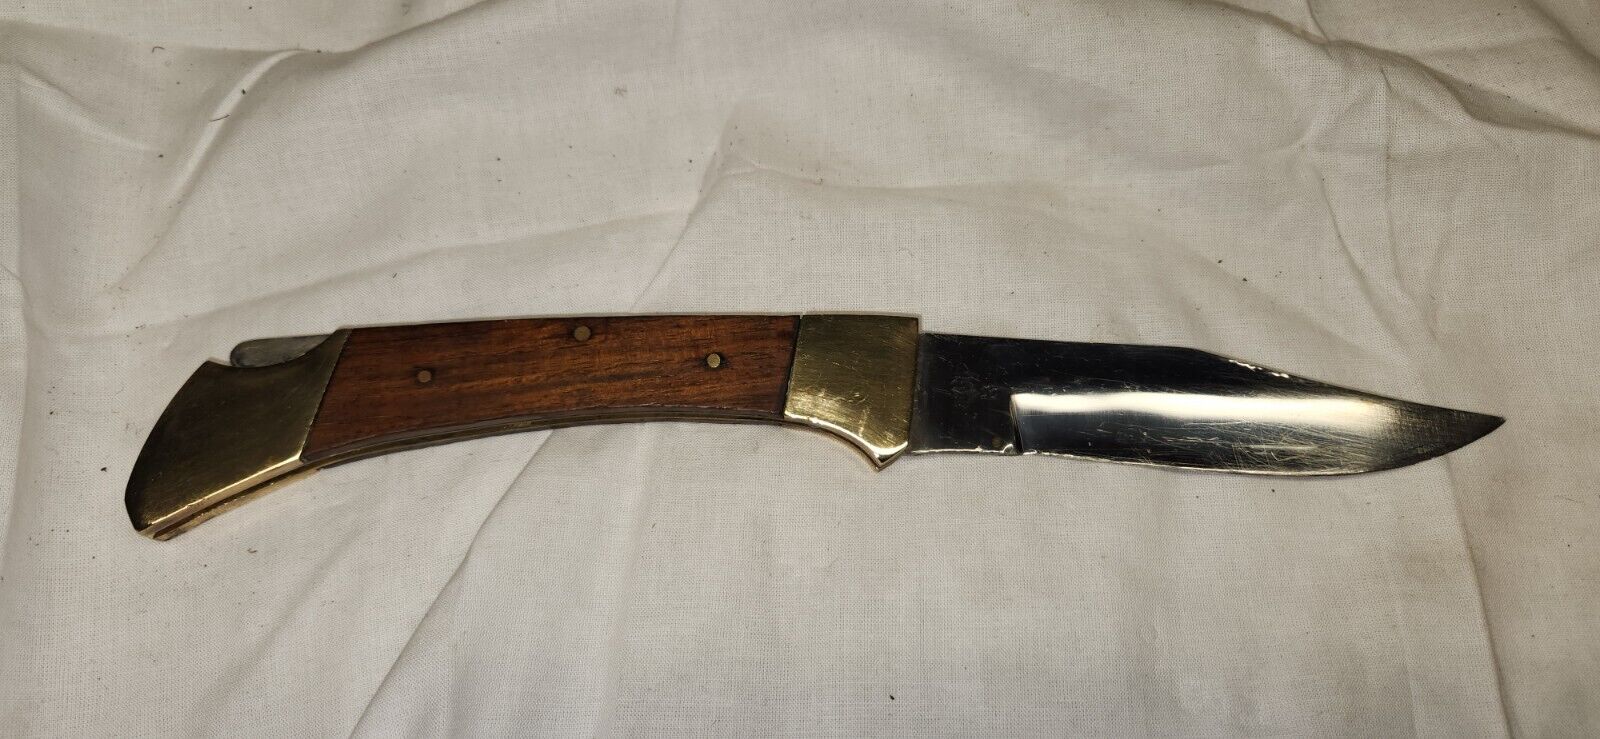  Vintage Large Pocket Knife Brass ends, Wood handles & Steel Made In Pakistan